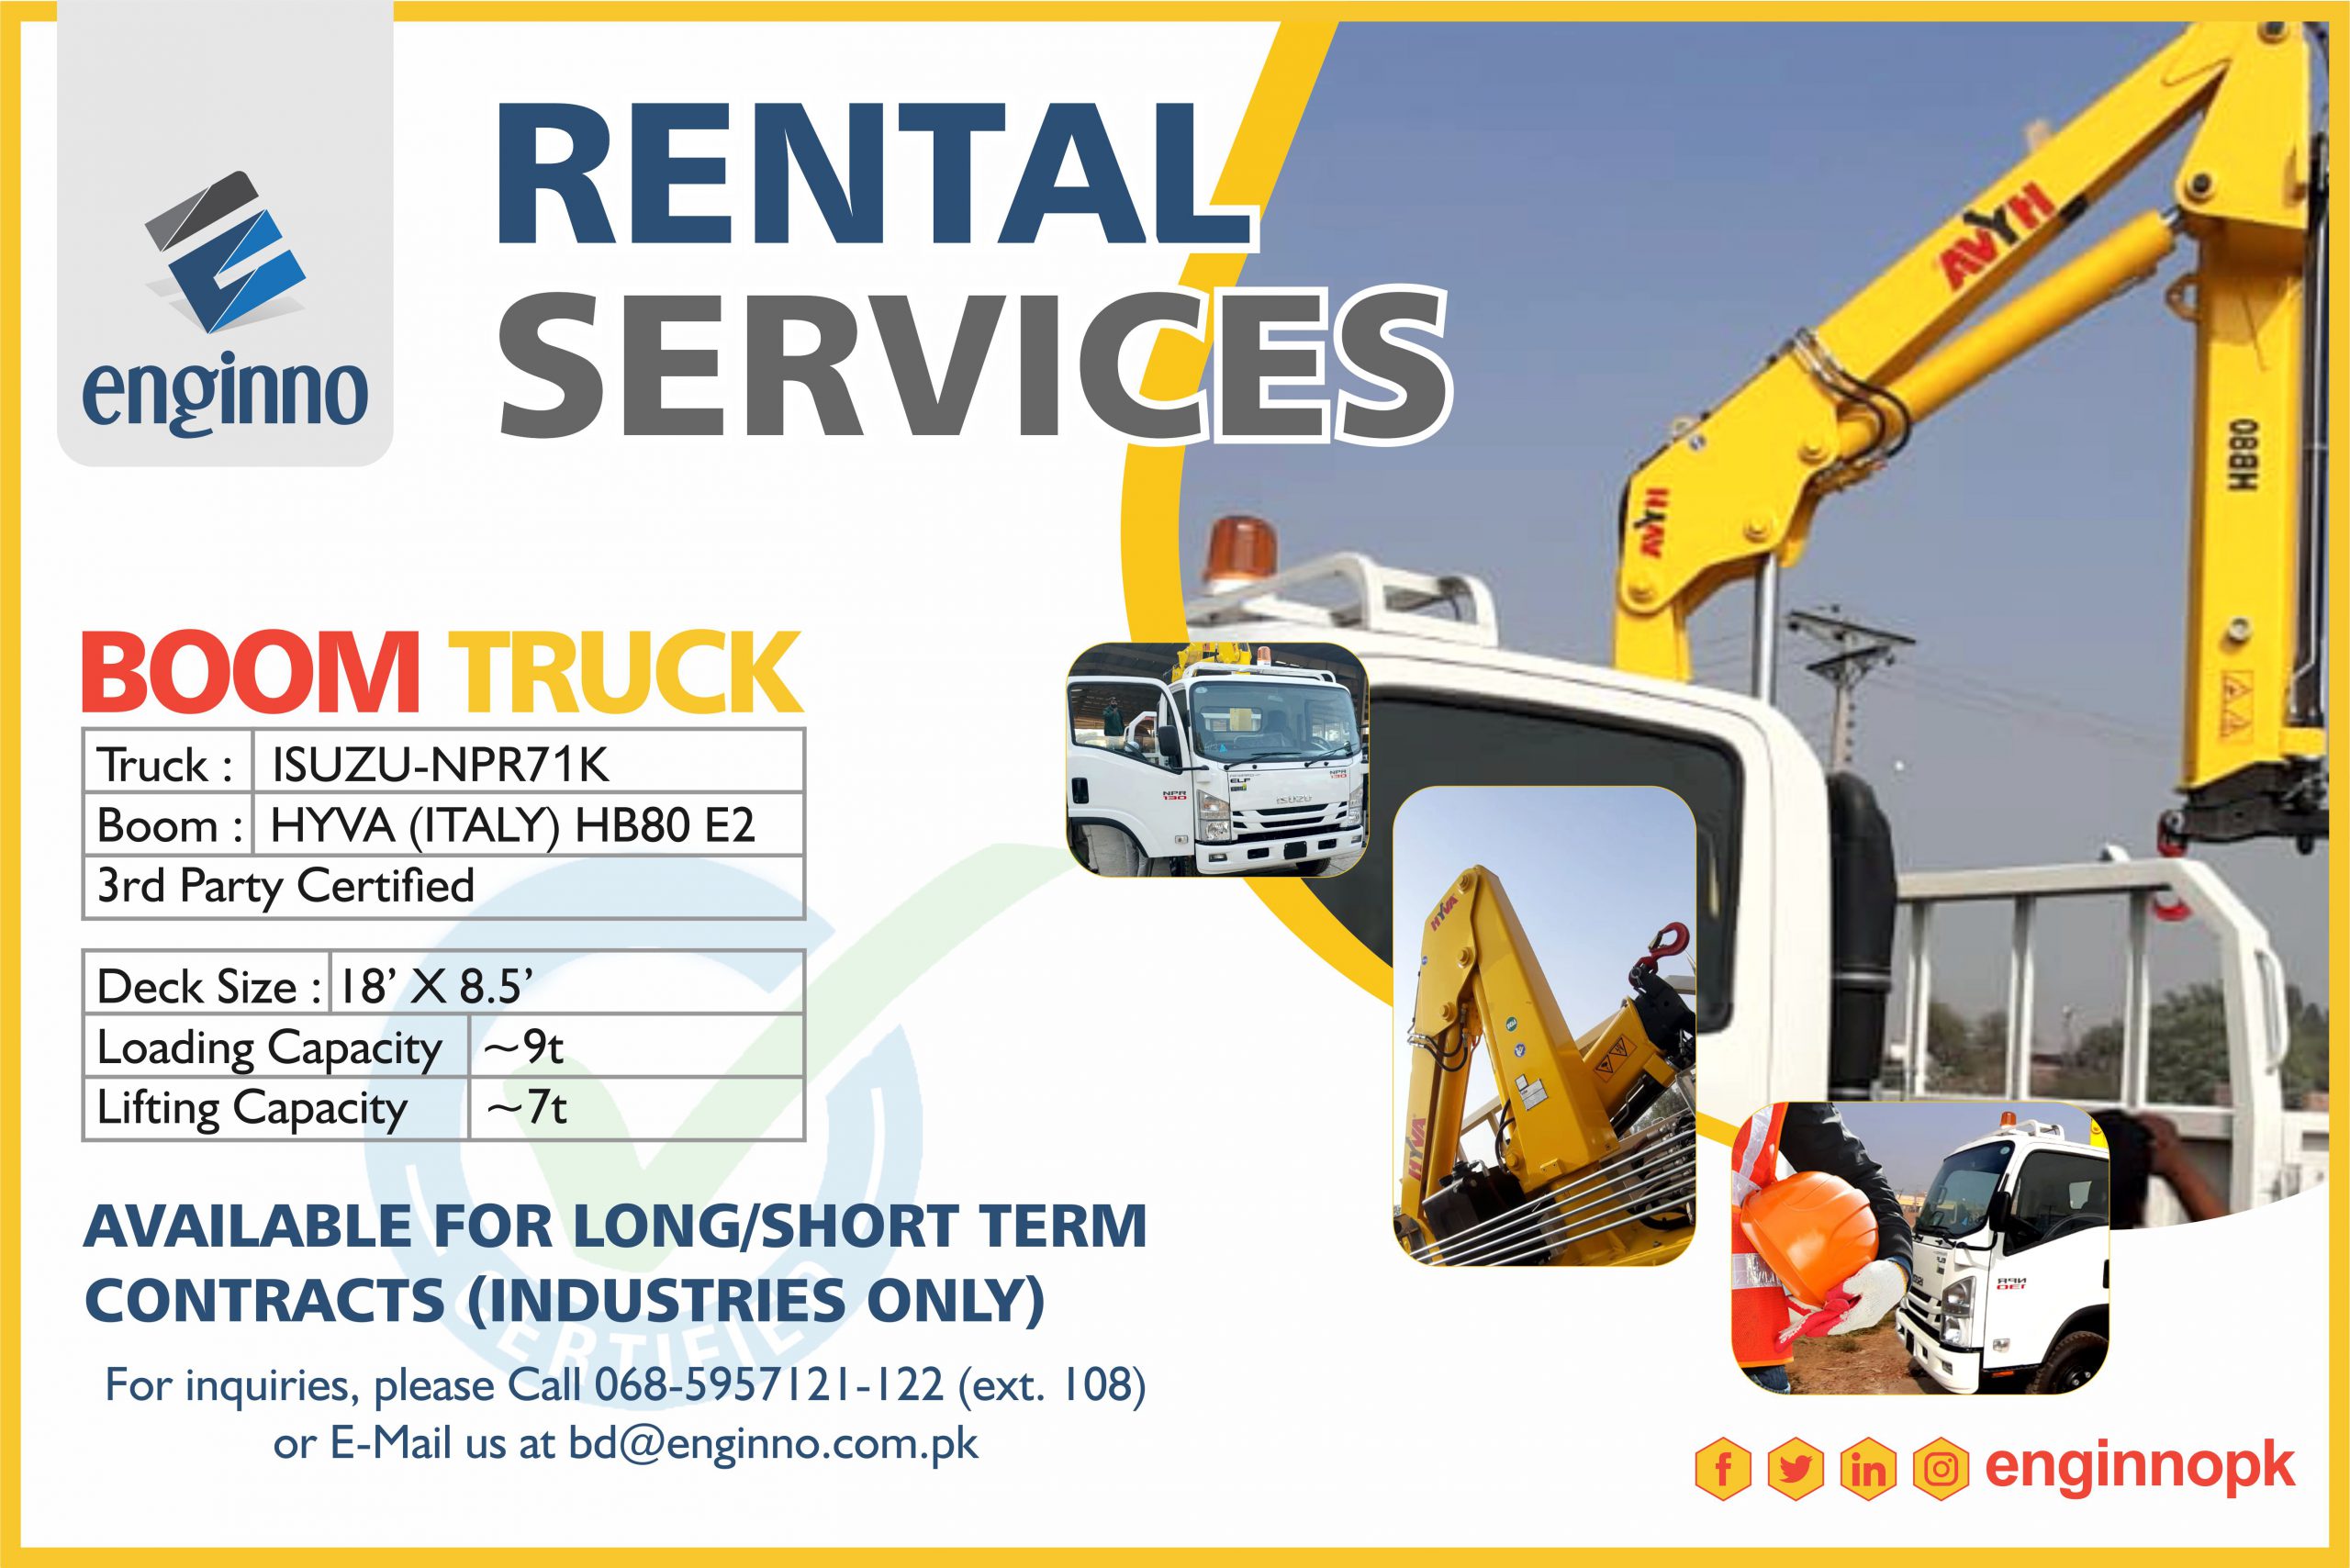 Enginno Rental Services